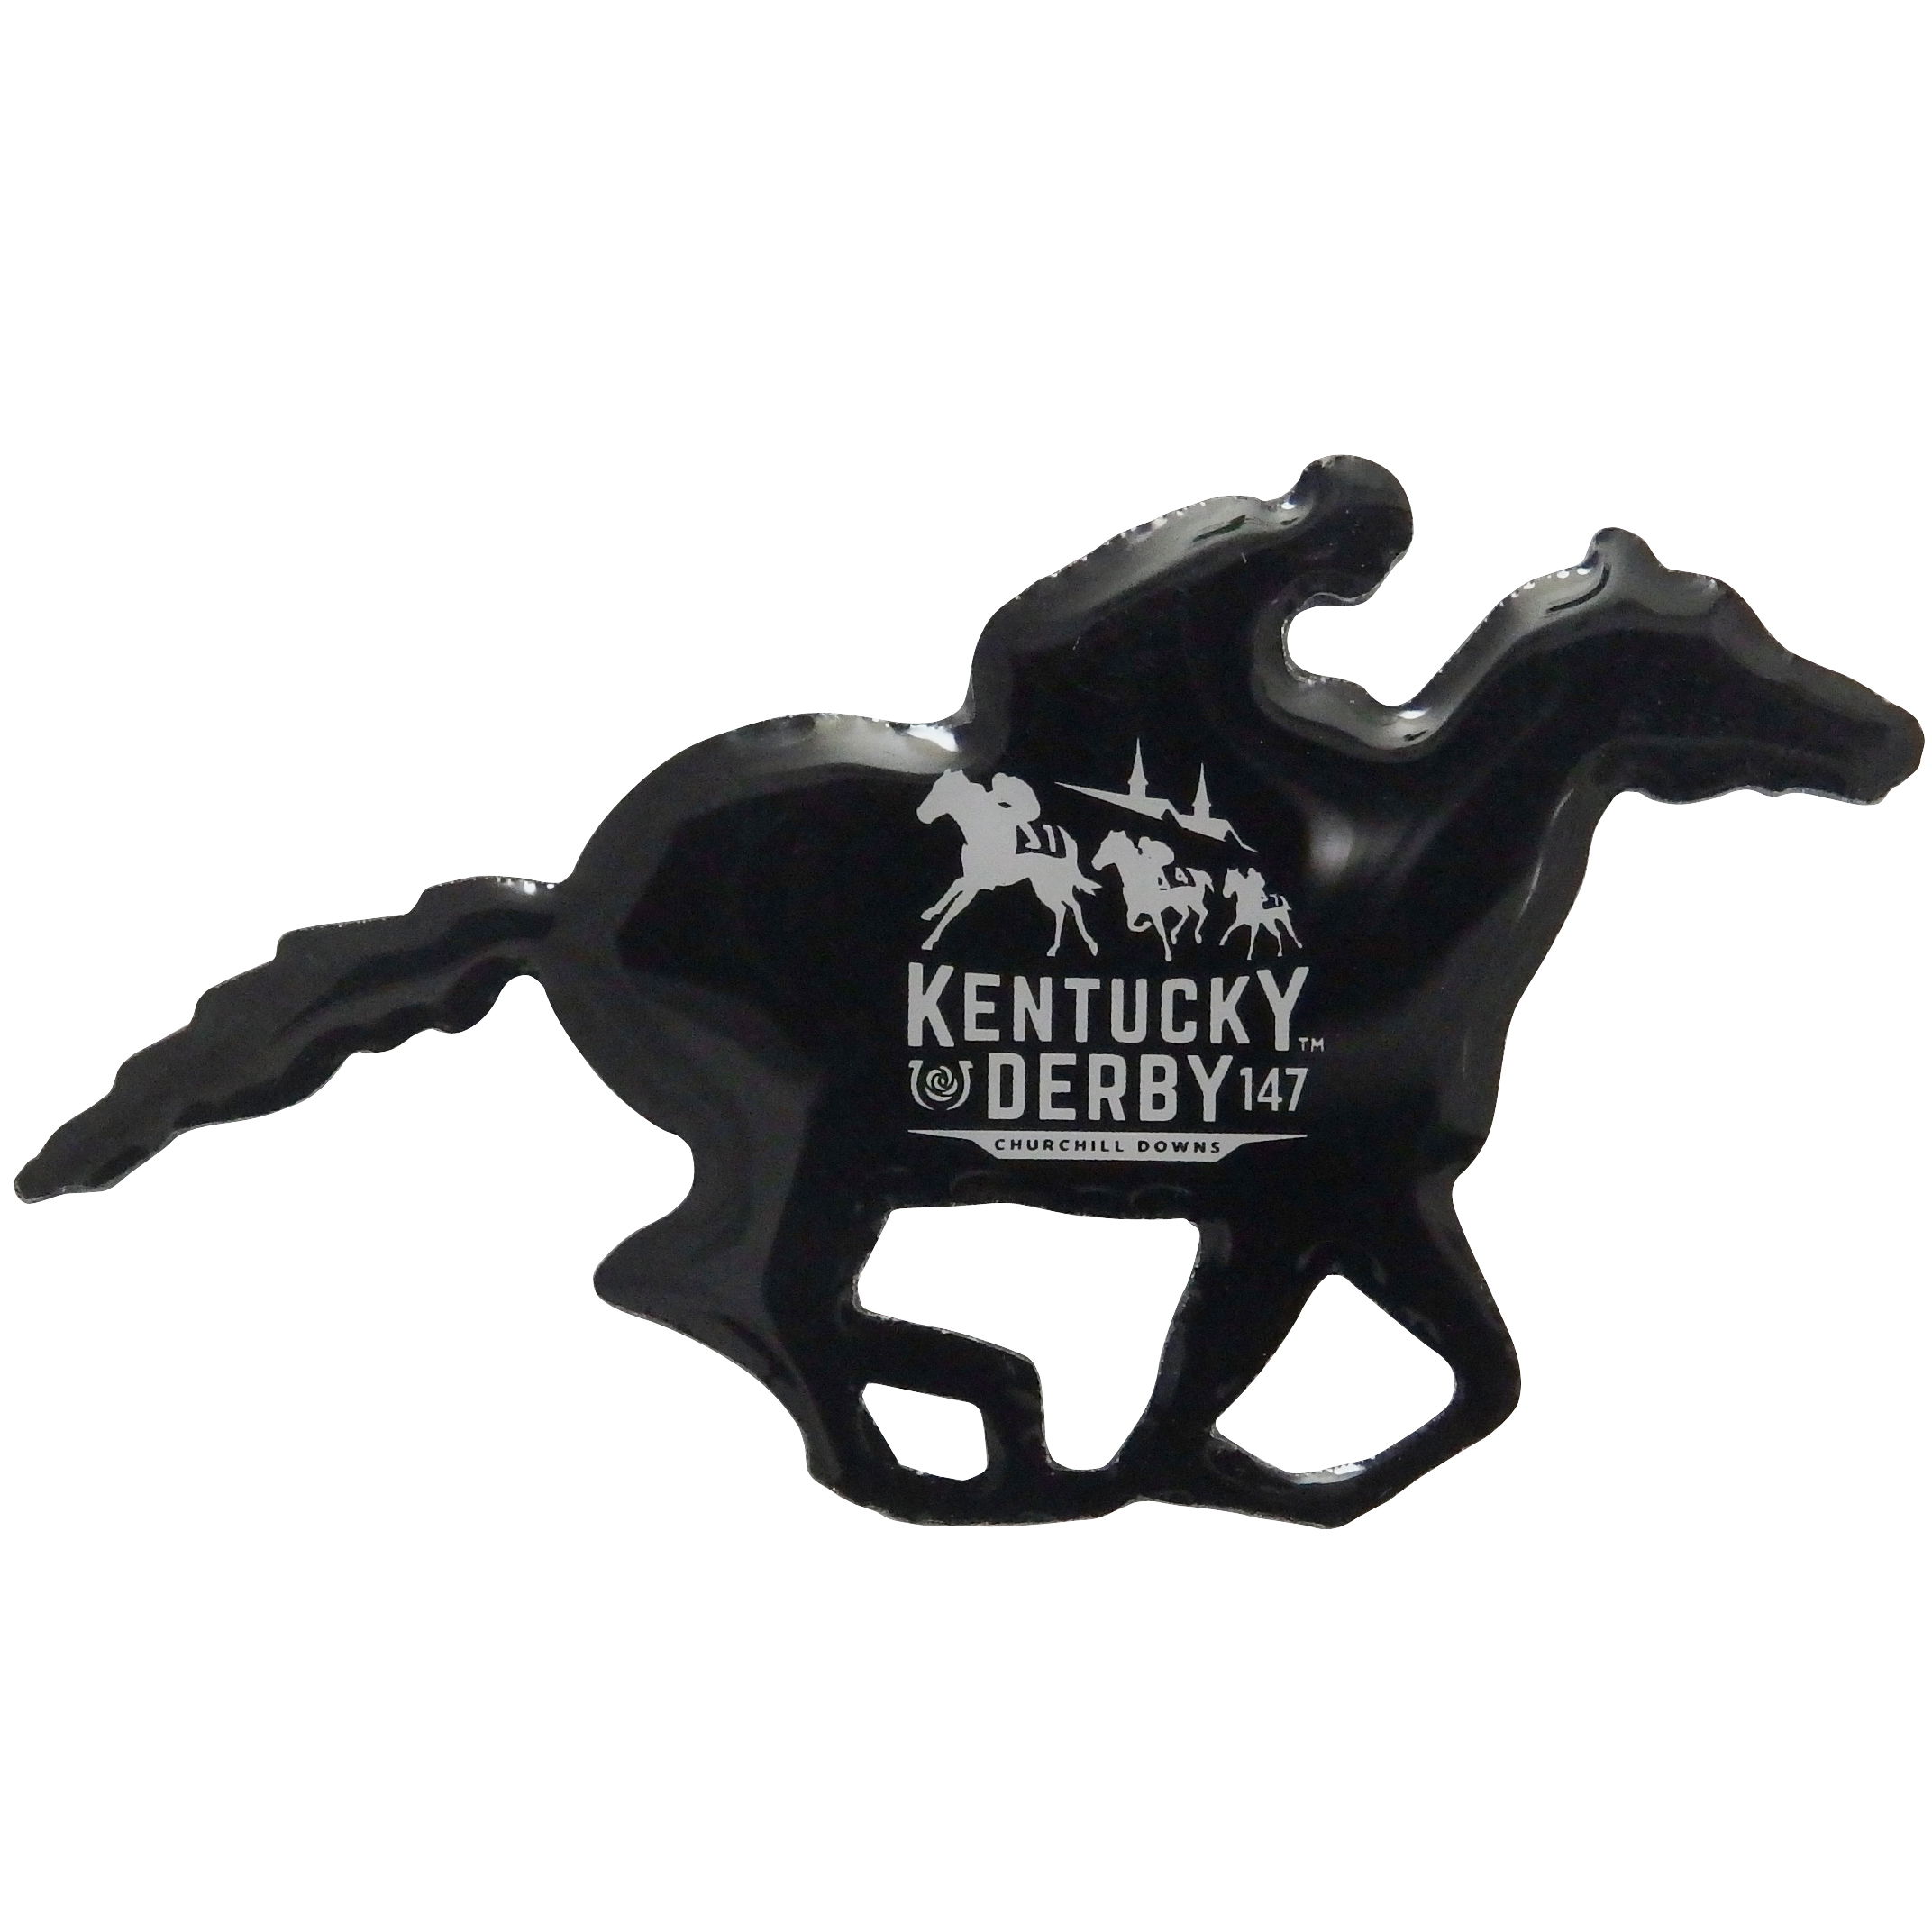 Kentucky Derby Collectible Pin 